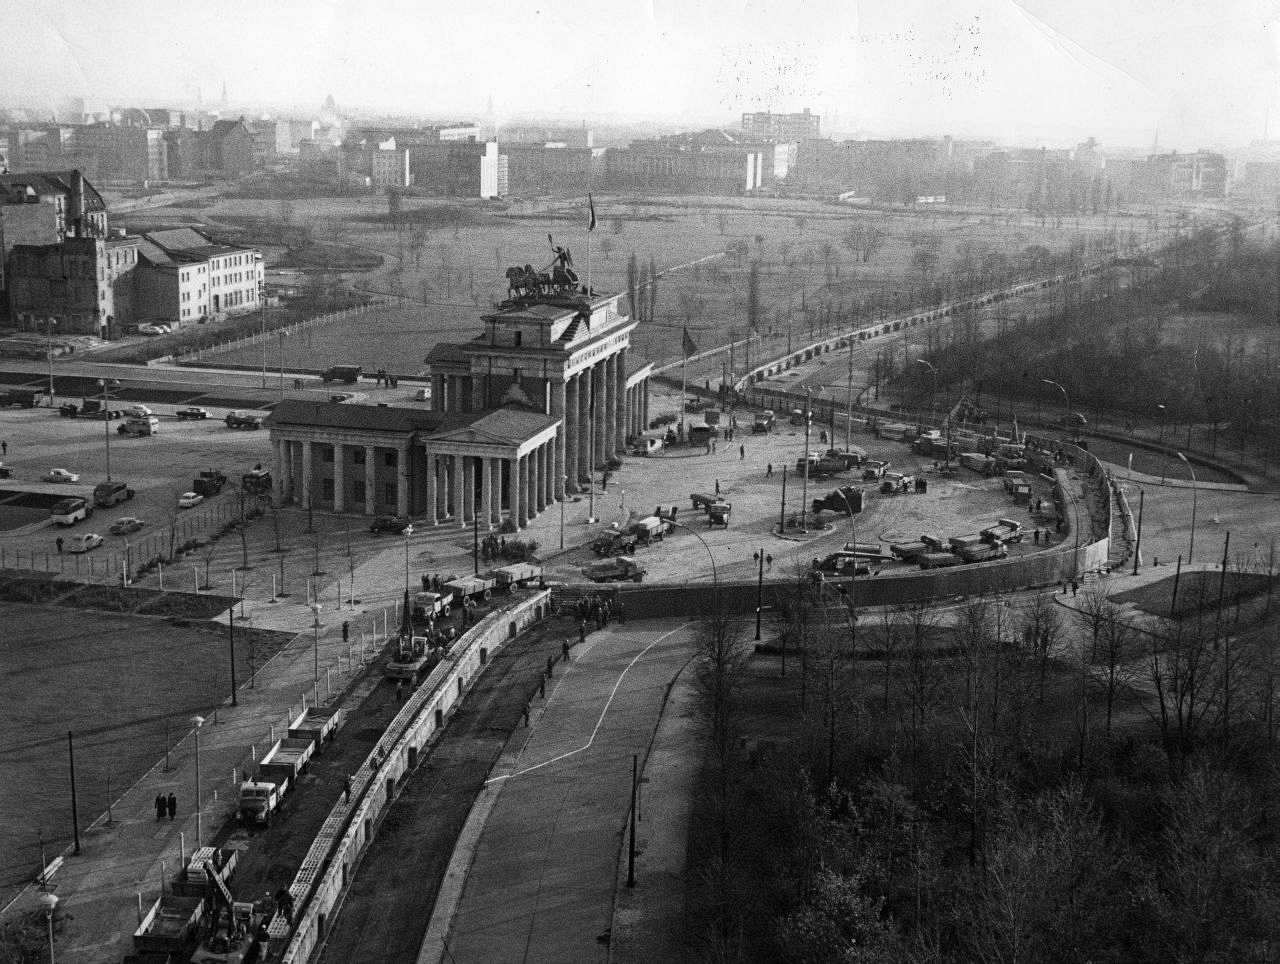 Seitlicher Blick von oben auf das Brandenburger Tor im Zentrum des Bildes. Eine Mauer läuft vertikal durch das Bild mit einer großen Ausbuchtung um das Tor. Links an der Mauer viele Fahrzeuge, im Hintergrund Freifläche und Gebäude; rechts davon Bäume.